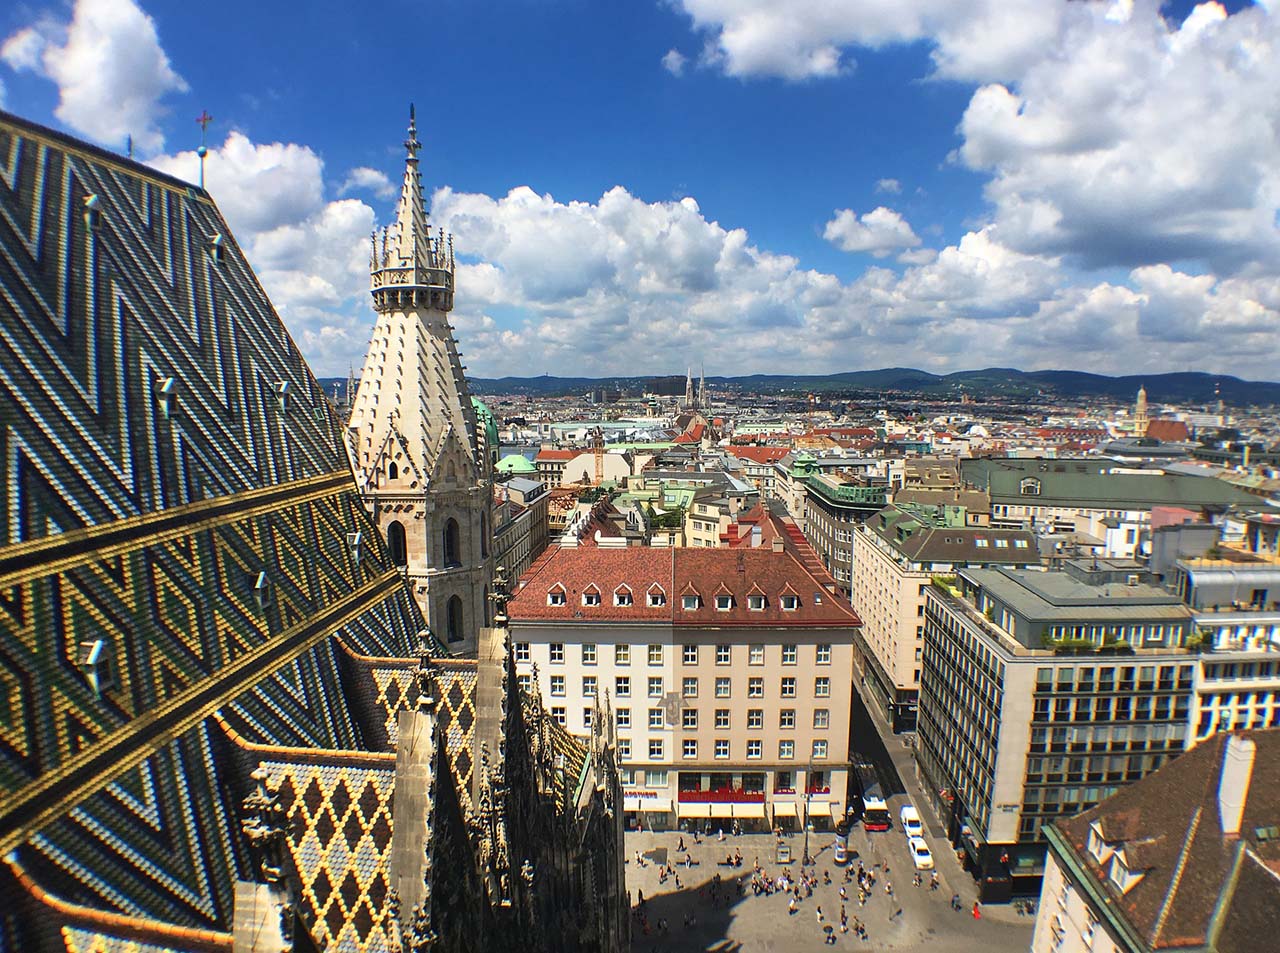 Wien, die Hauptstadt Österreichs, liegt im Osten des Landes an der Donau. Ihr künstlerisches und intellektuelles Erbe wurde von Bewohnern wie Mozart, Beethoven und Sigmund Freud geprägt.